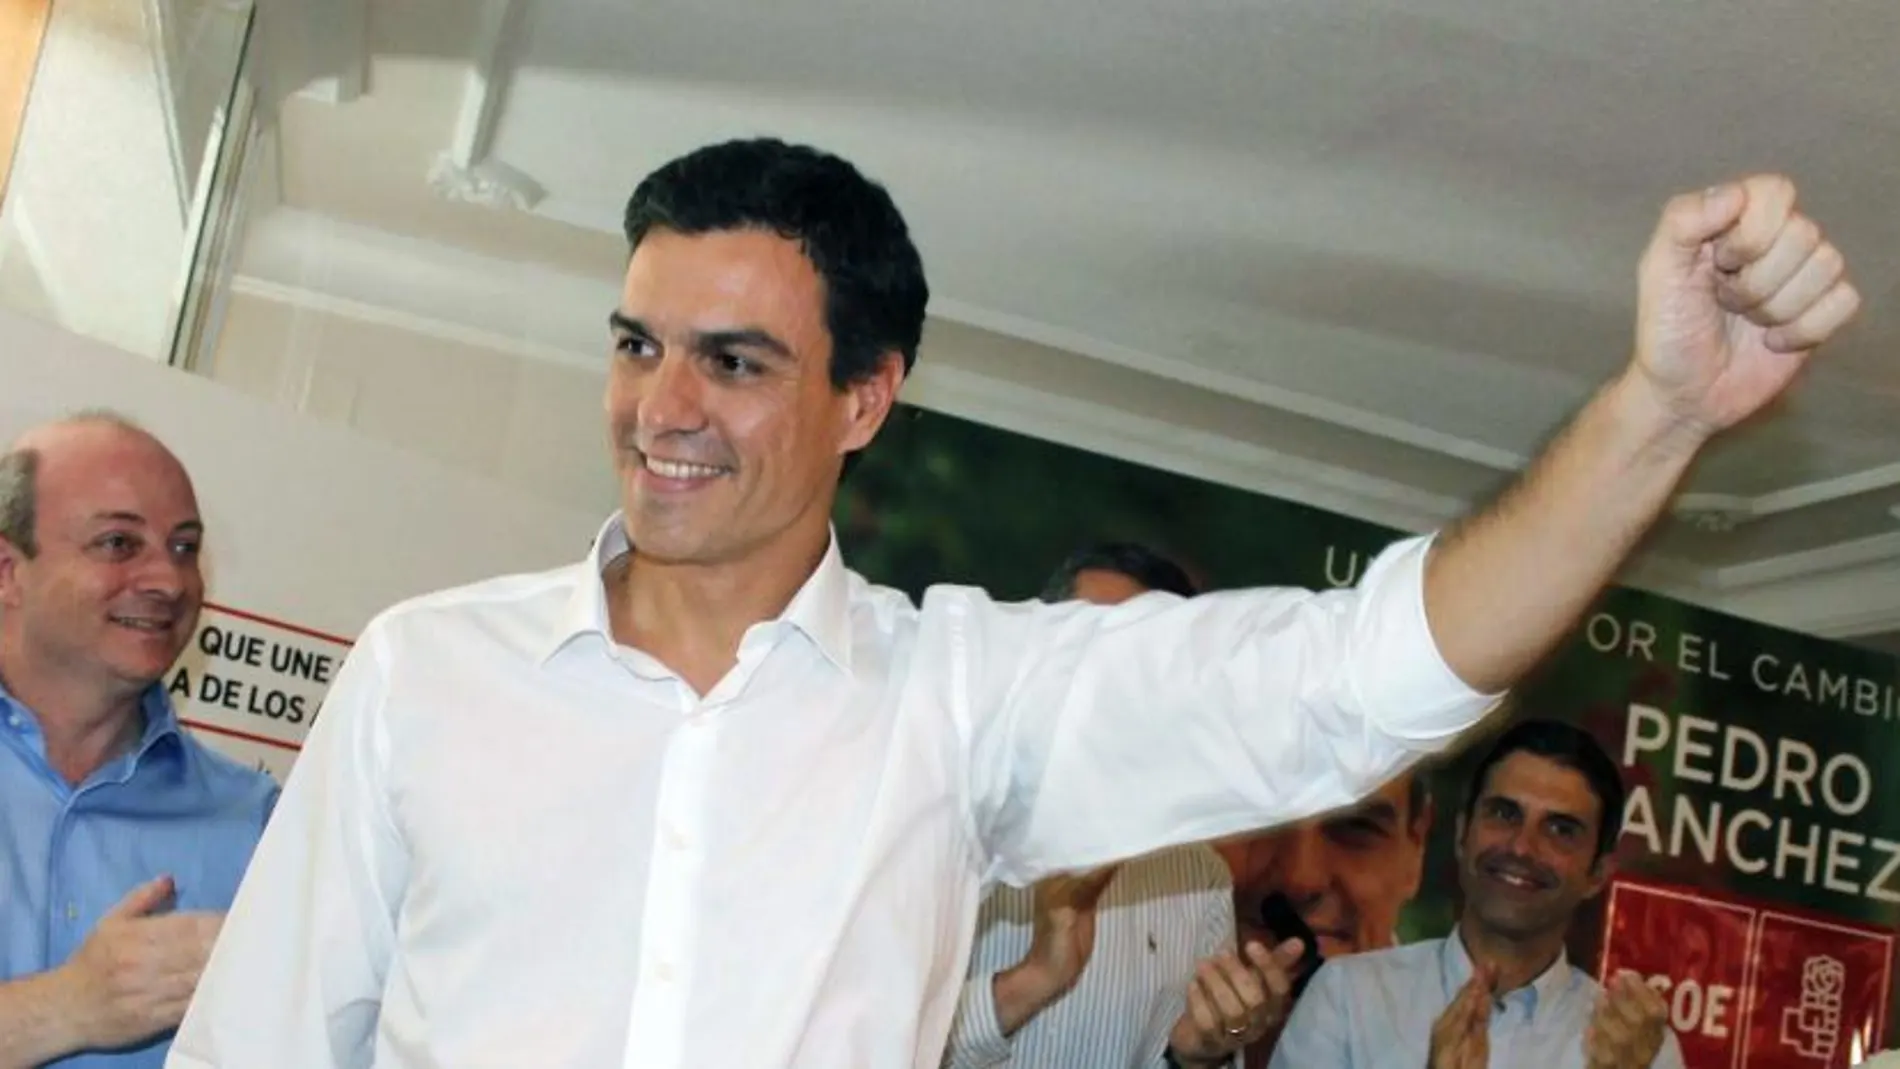 El candidato a la Secretaría General del PSOE Pedro Sánchez levanta el puño al finalizar el acto con militantes hoy en Talavera de la Reina